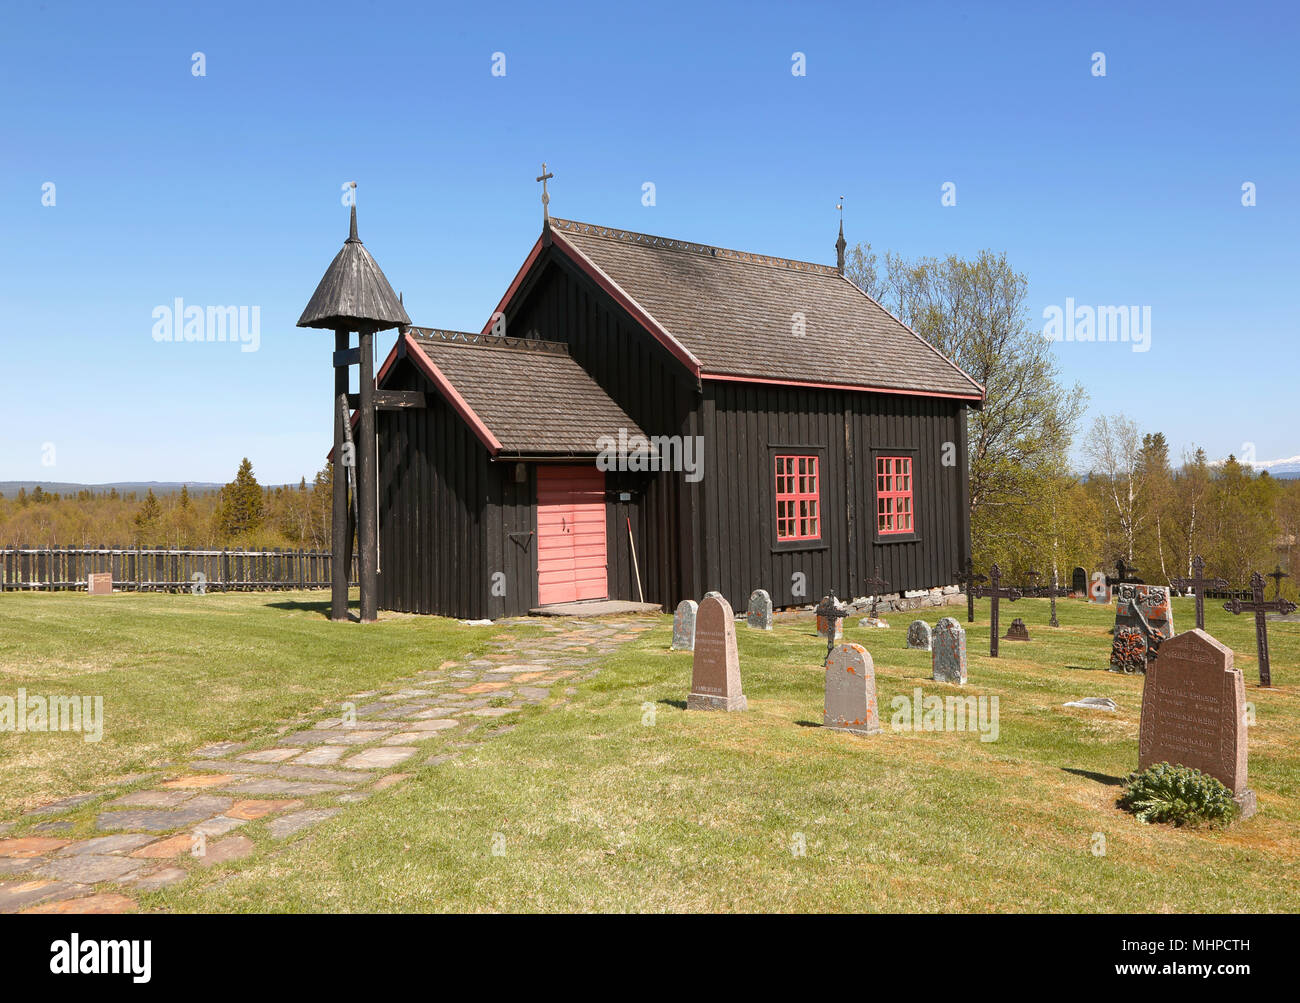 Handol, Suecia - 27 de mayo de 2014: Handol capilla, edificio de la iglesia en madera y cementerio perteneciente a la comunidad religiosa de la Iglesia Sueca. Foto de stock